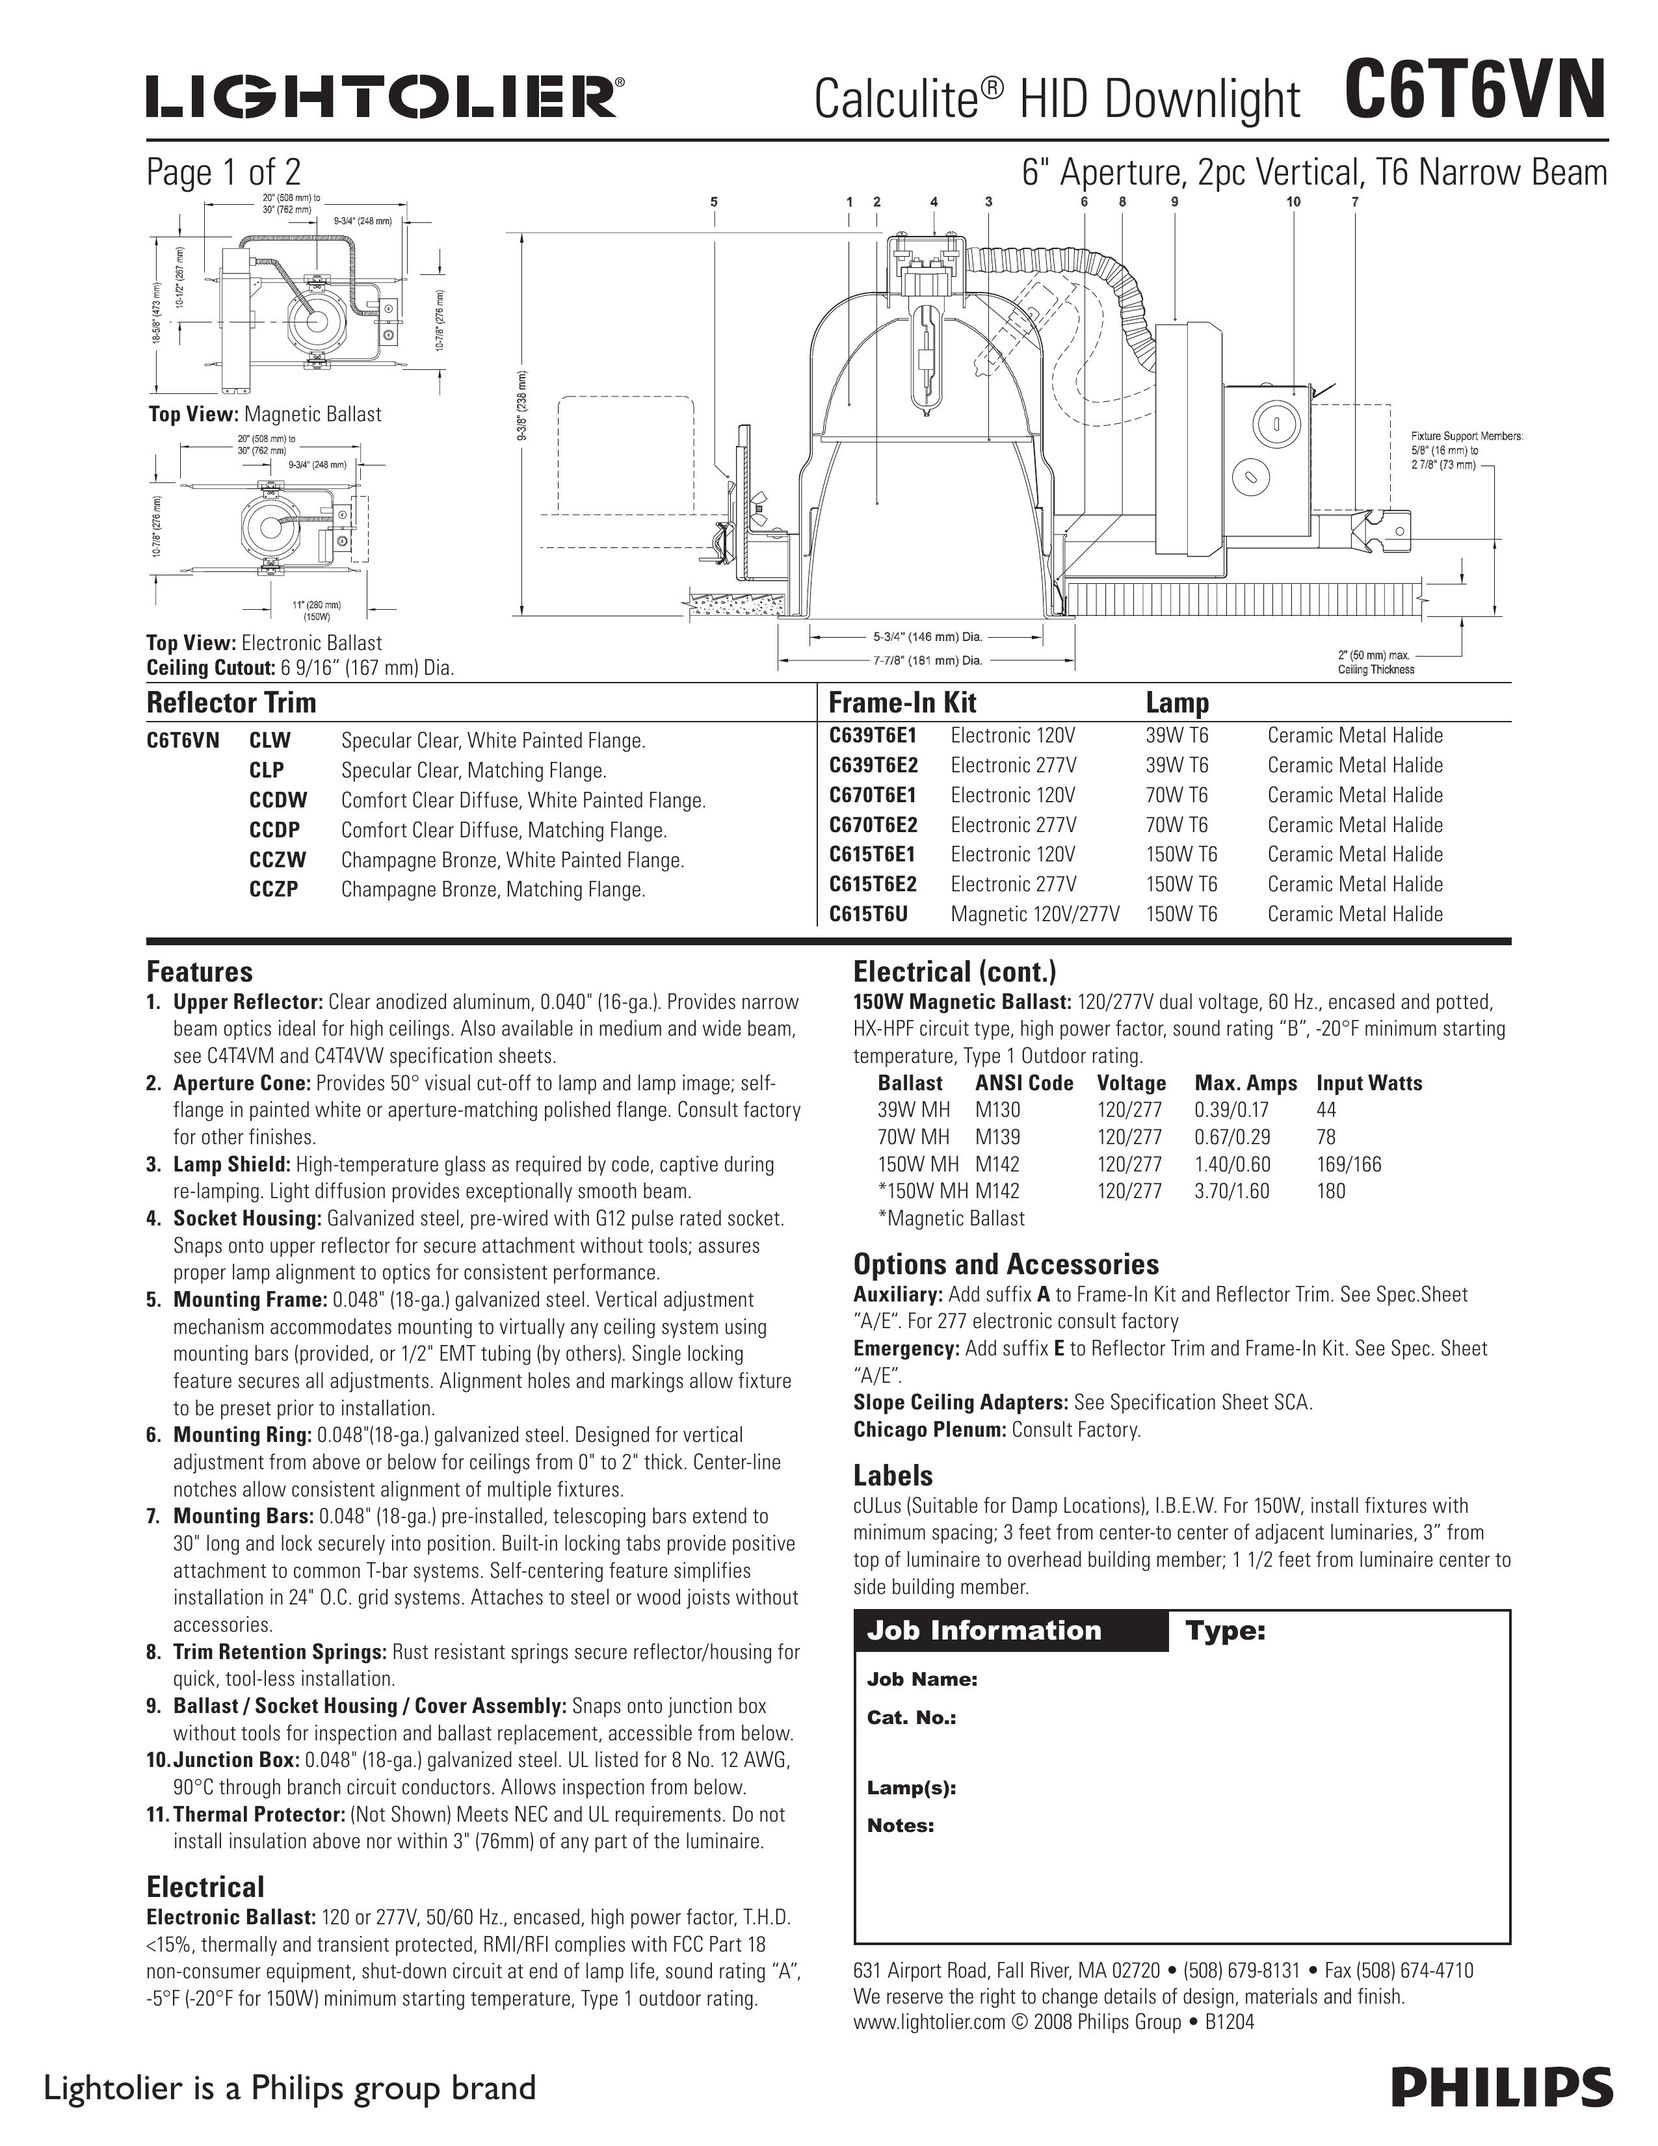 Lightolier C6T6VN Work Light User Manual